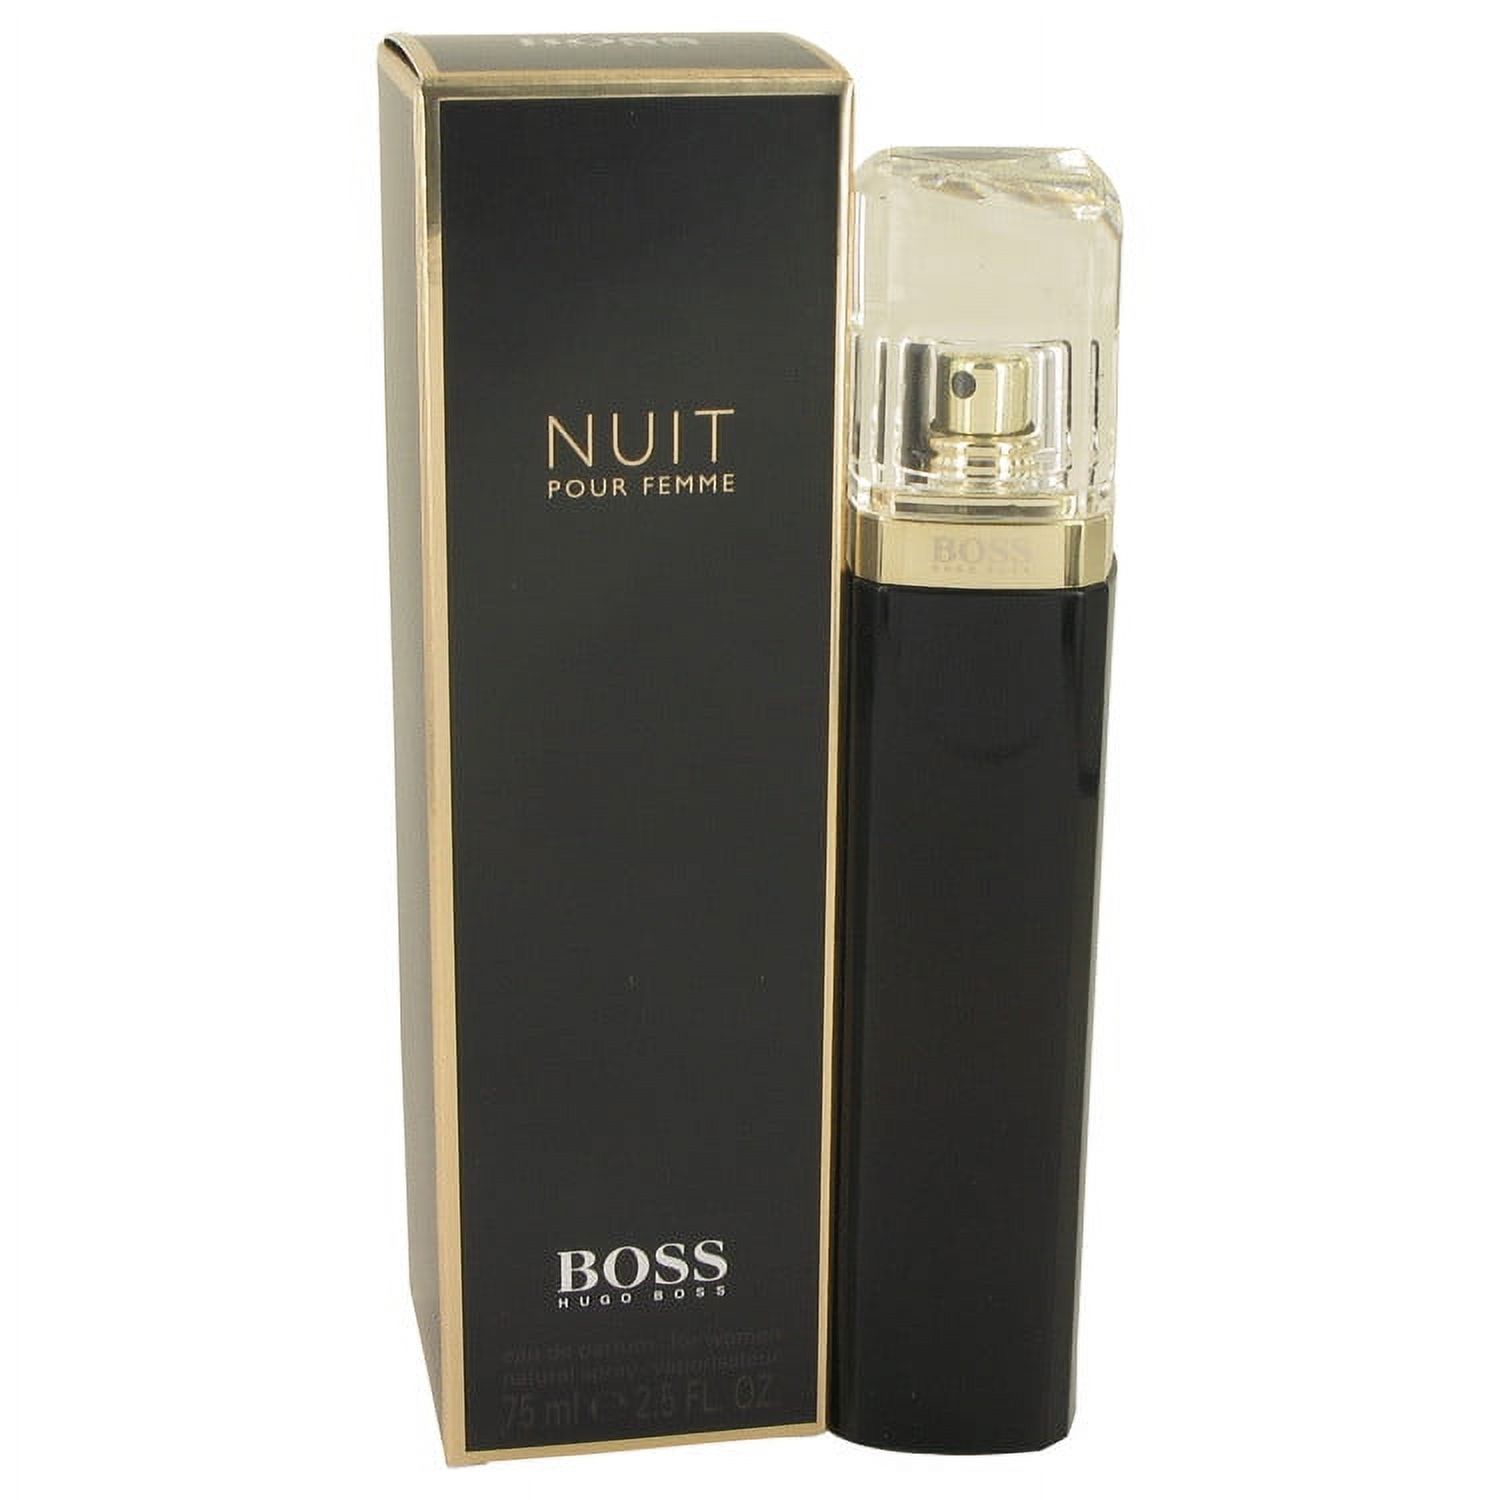 Hugo Boss Boss Nuit Eau De Parfum Spray for Women 2.5 oz - image 1 of 9